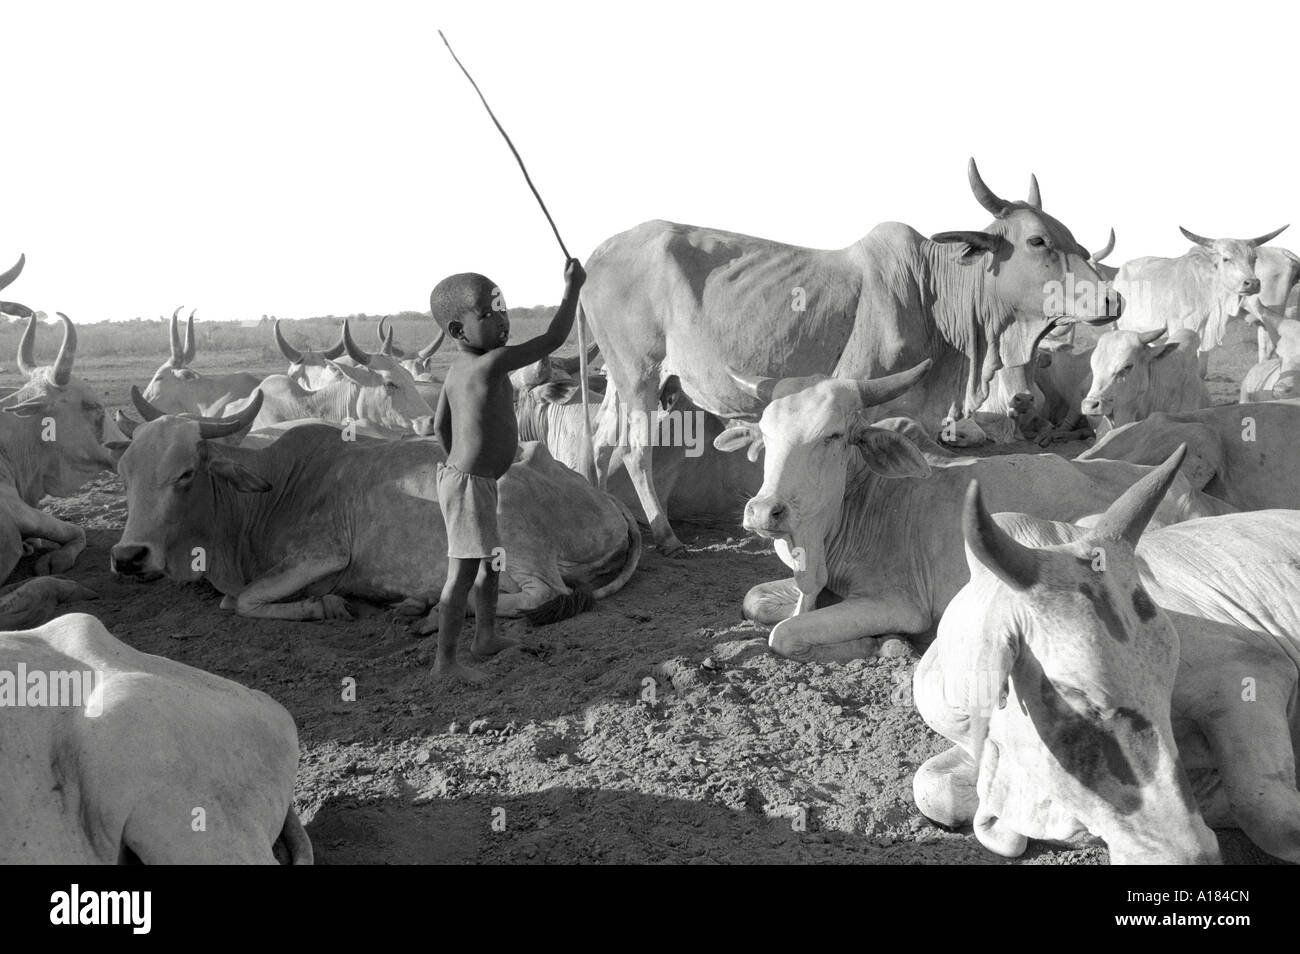 B/N di un giovanissimo ragazzo rurale di Oromo che brandisce un bastone, esercitando le sue abilità nella manipolazione del bestiame. Nr Wajir, Kenya, Africa orientale Foto Stock